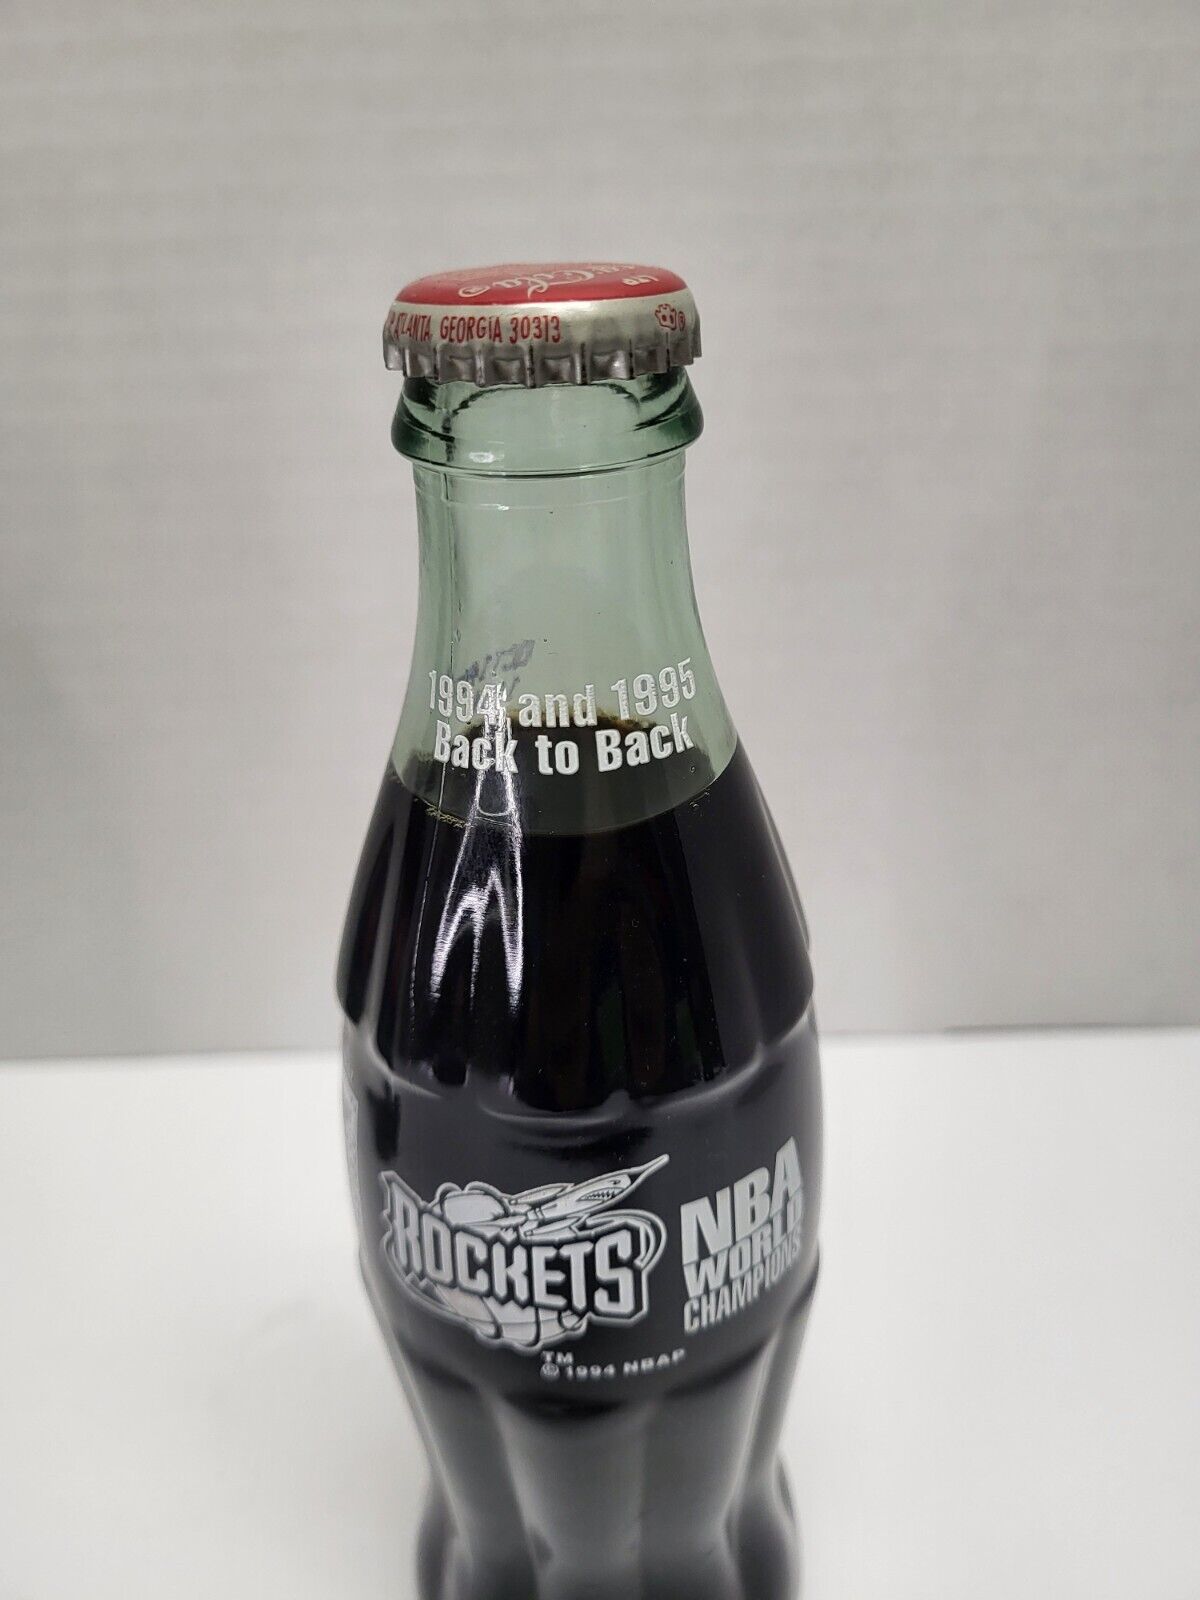 Houston Rockets Collectors Back to Back Coke Bottle sealed NBA Rare